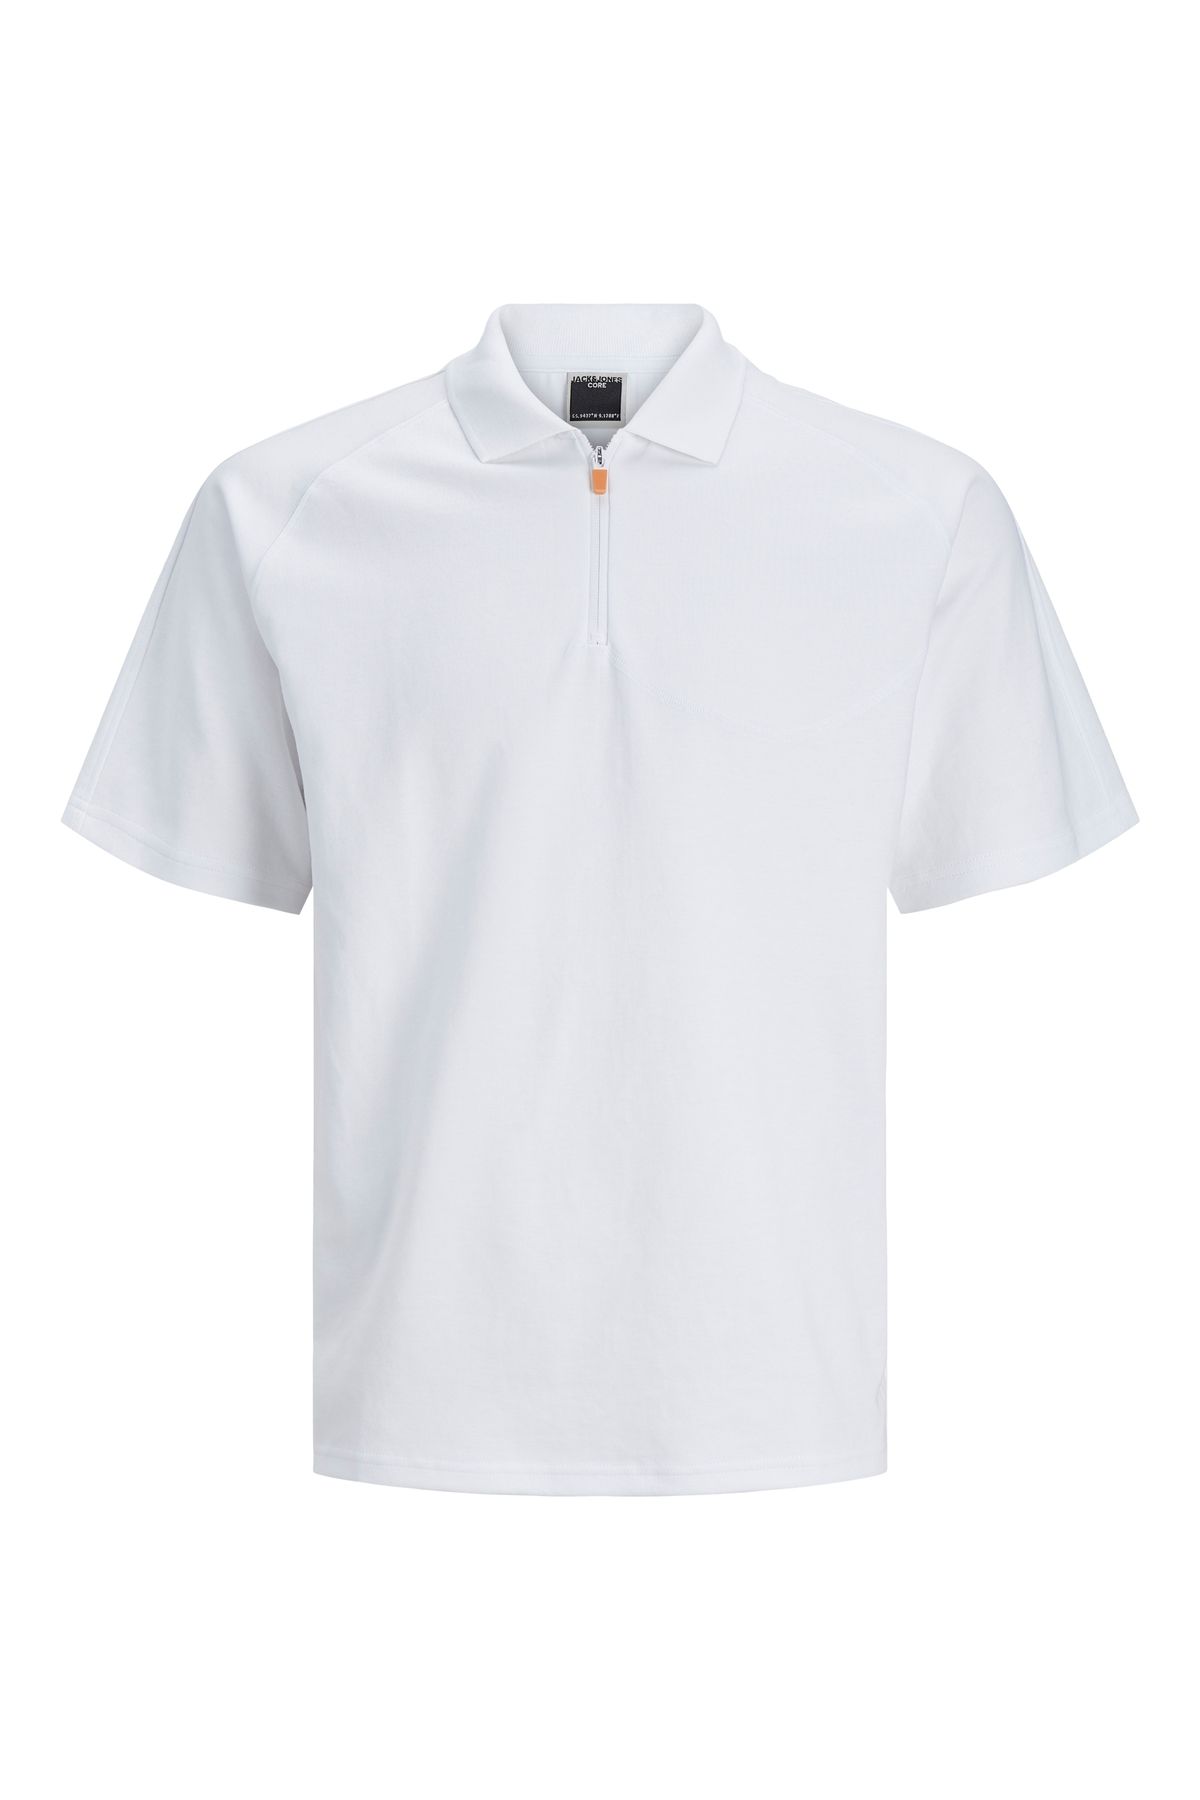 Jack & Jones Jack Jones Jcofusıon Polo Ss Erkek Beyaz Tshirt 12253683-01